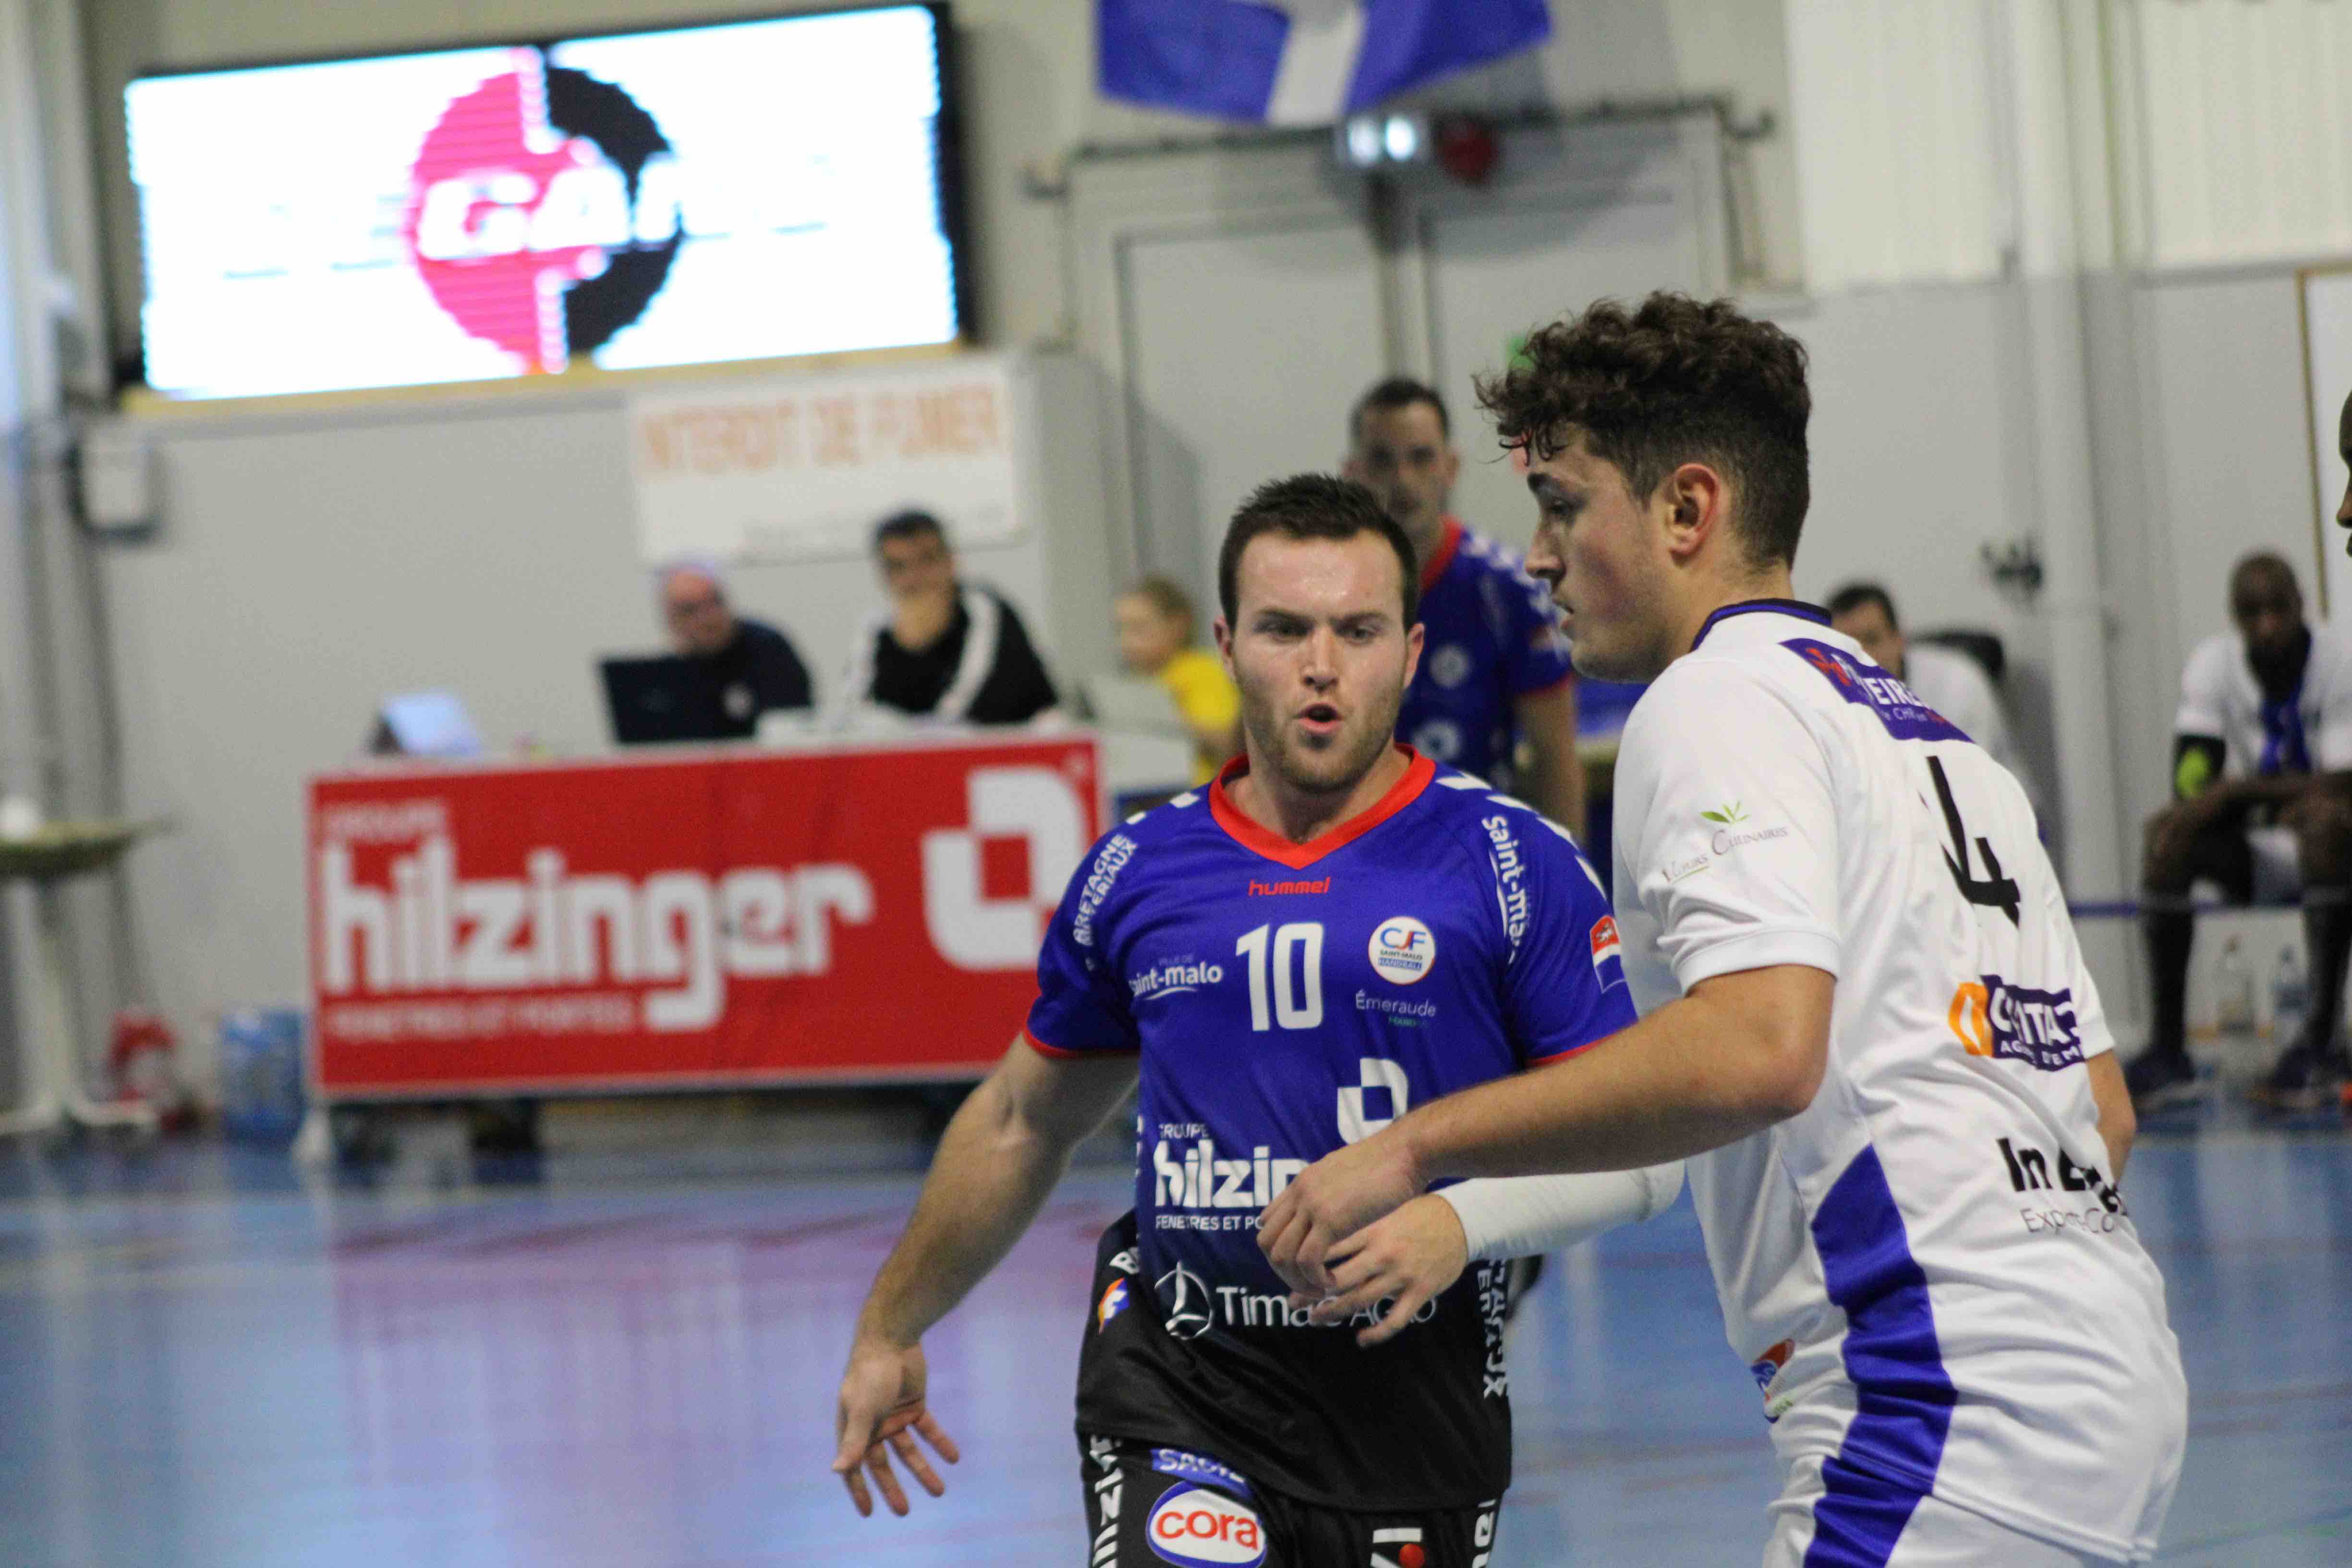 2019nov23 CJF hb _ SC handball (132)